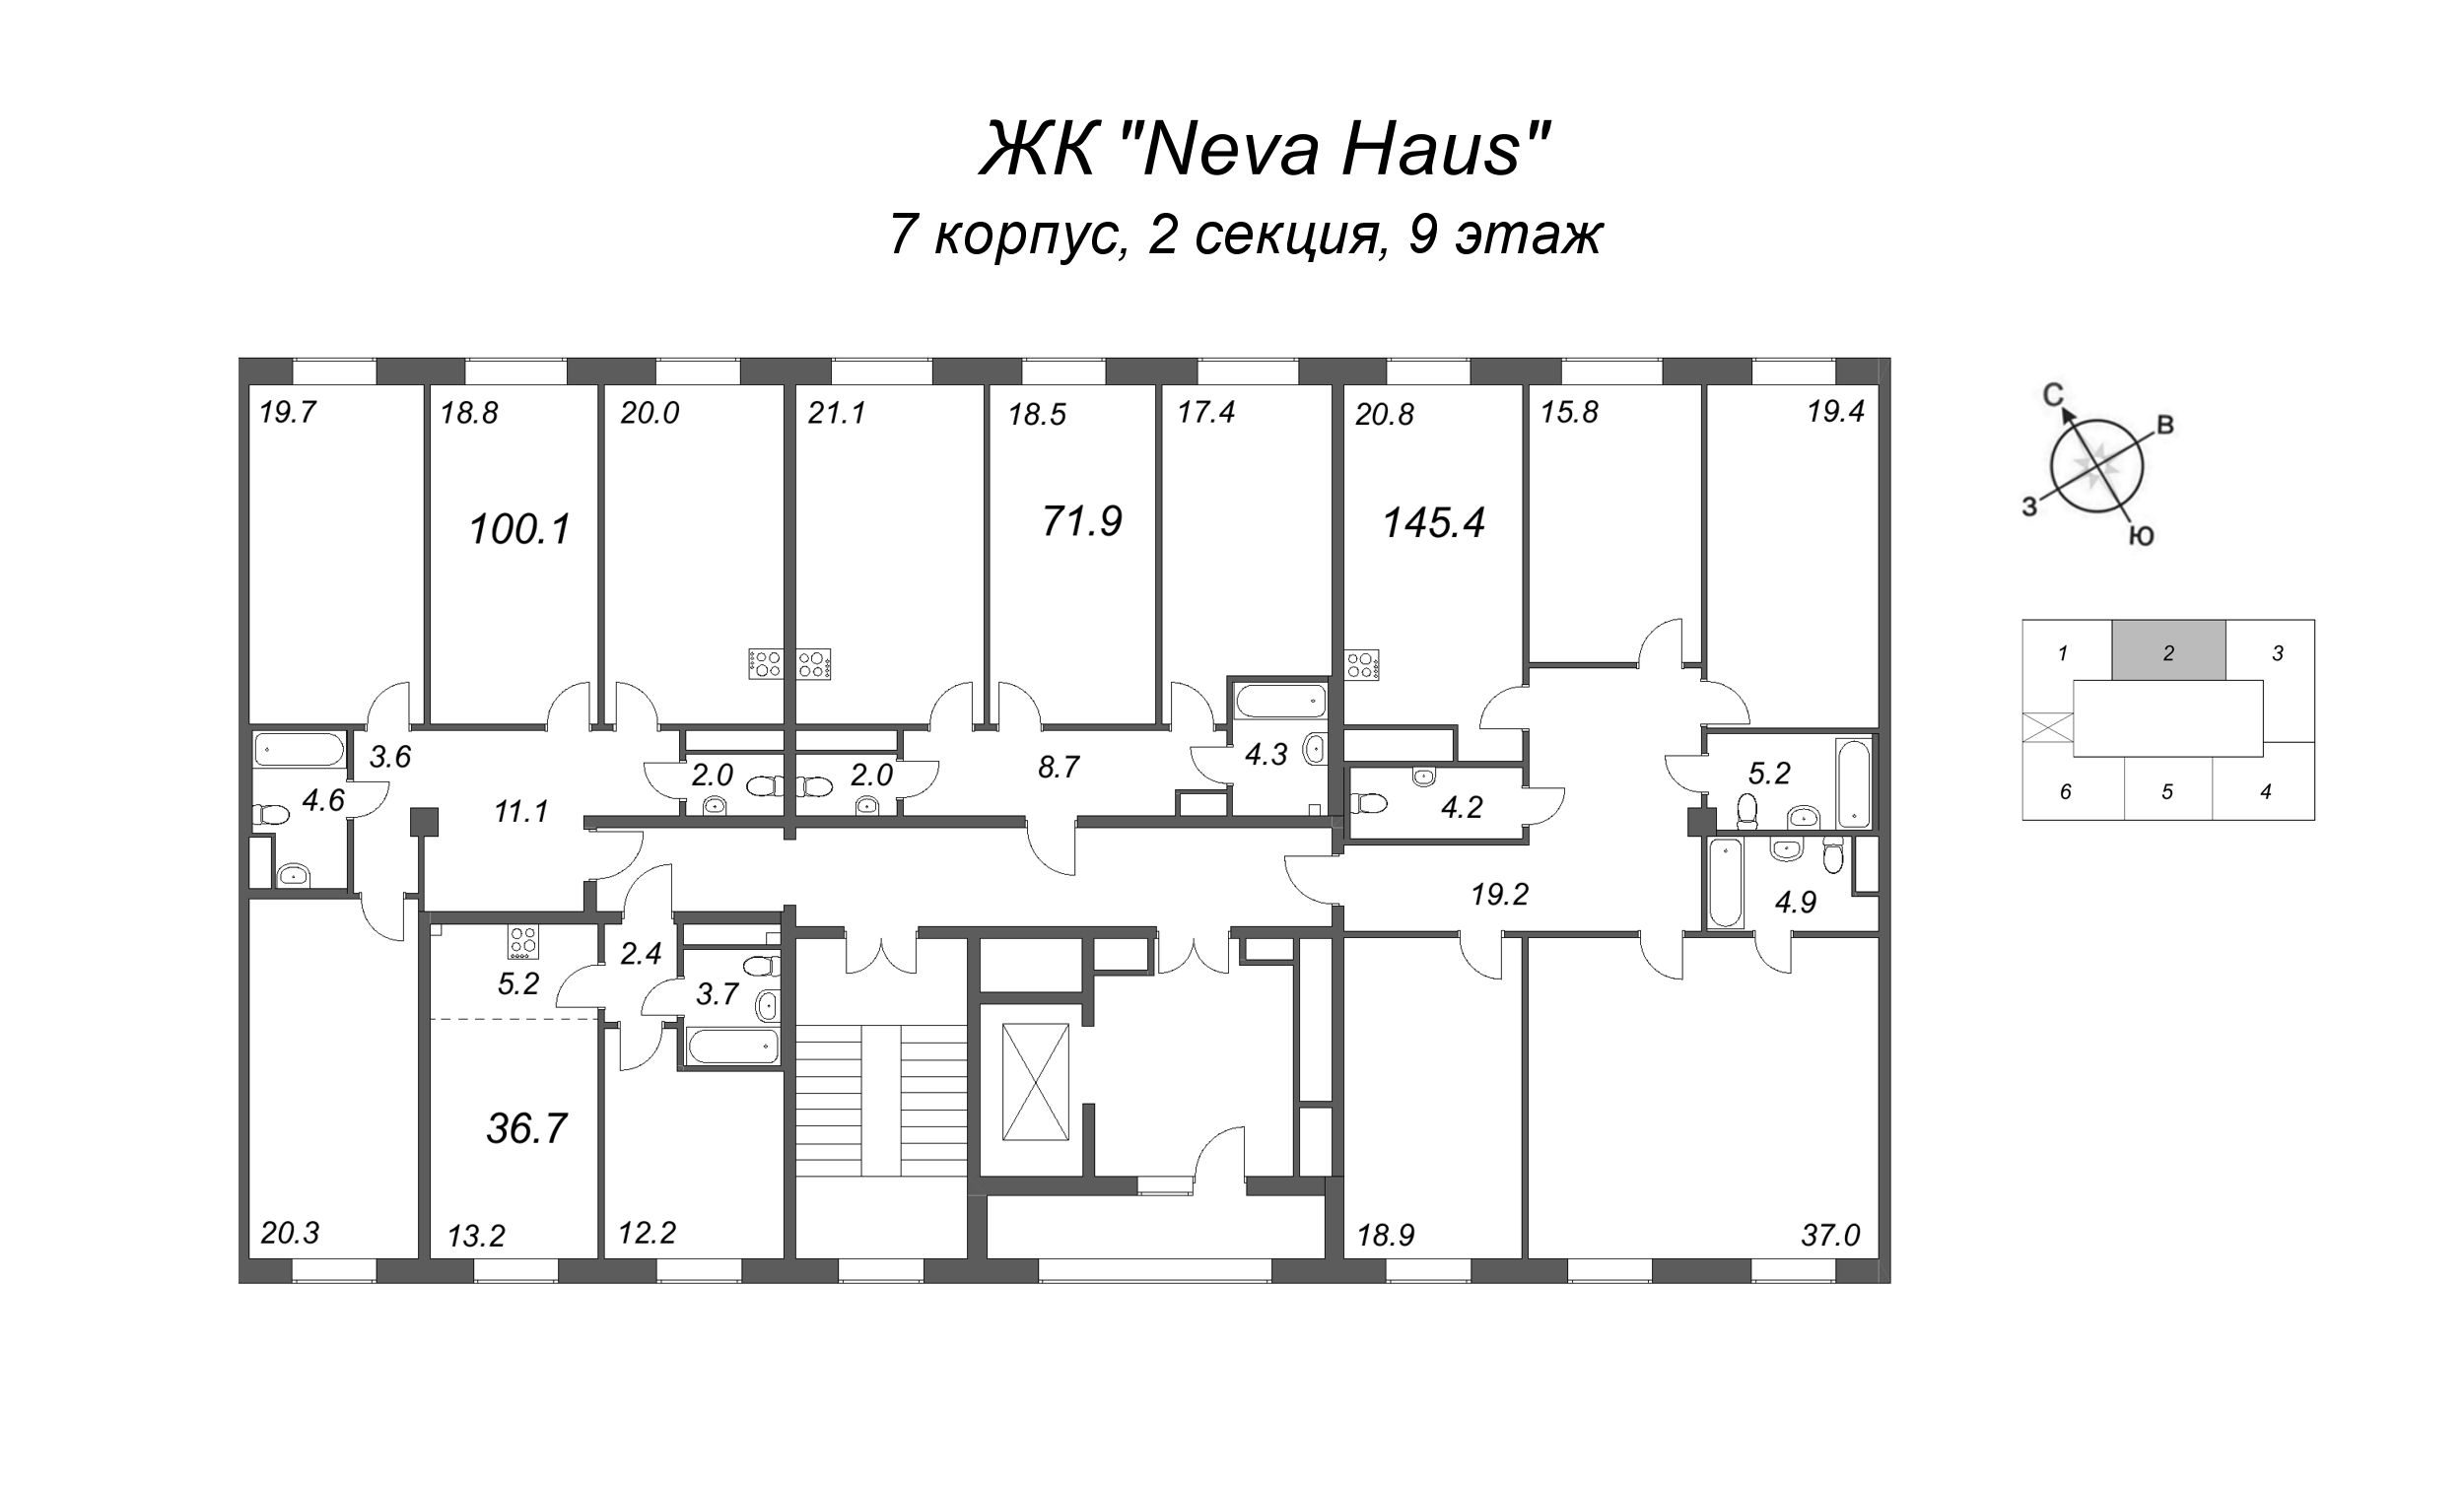 4-комнатная (Евро) квартира, 100.9 м² в ЖК "Neva Haus" - планировка этажа